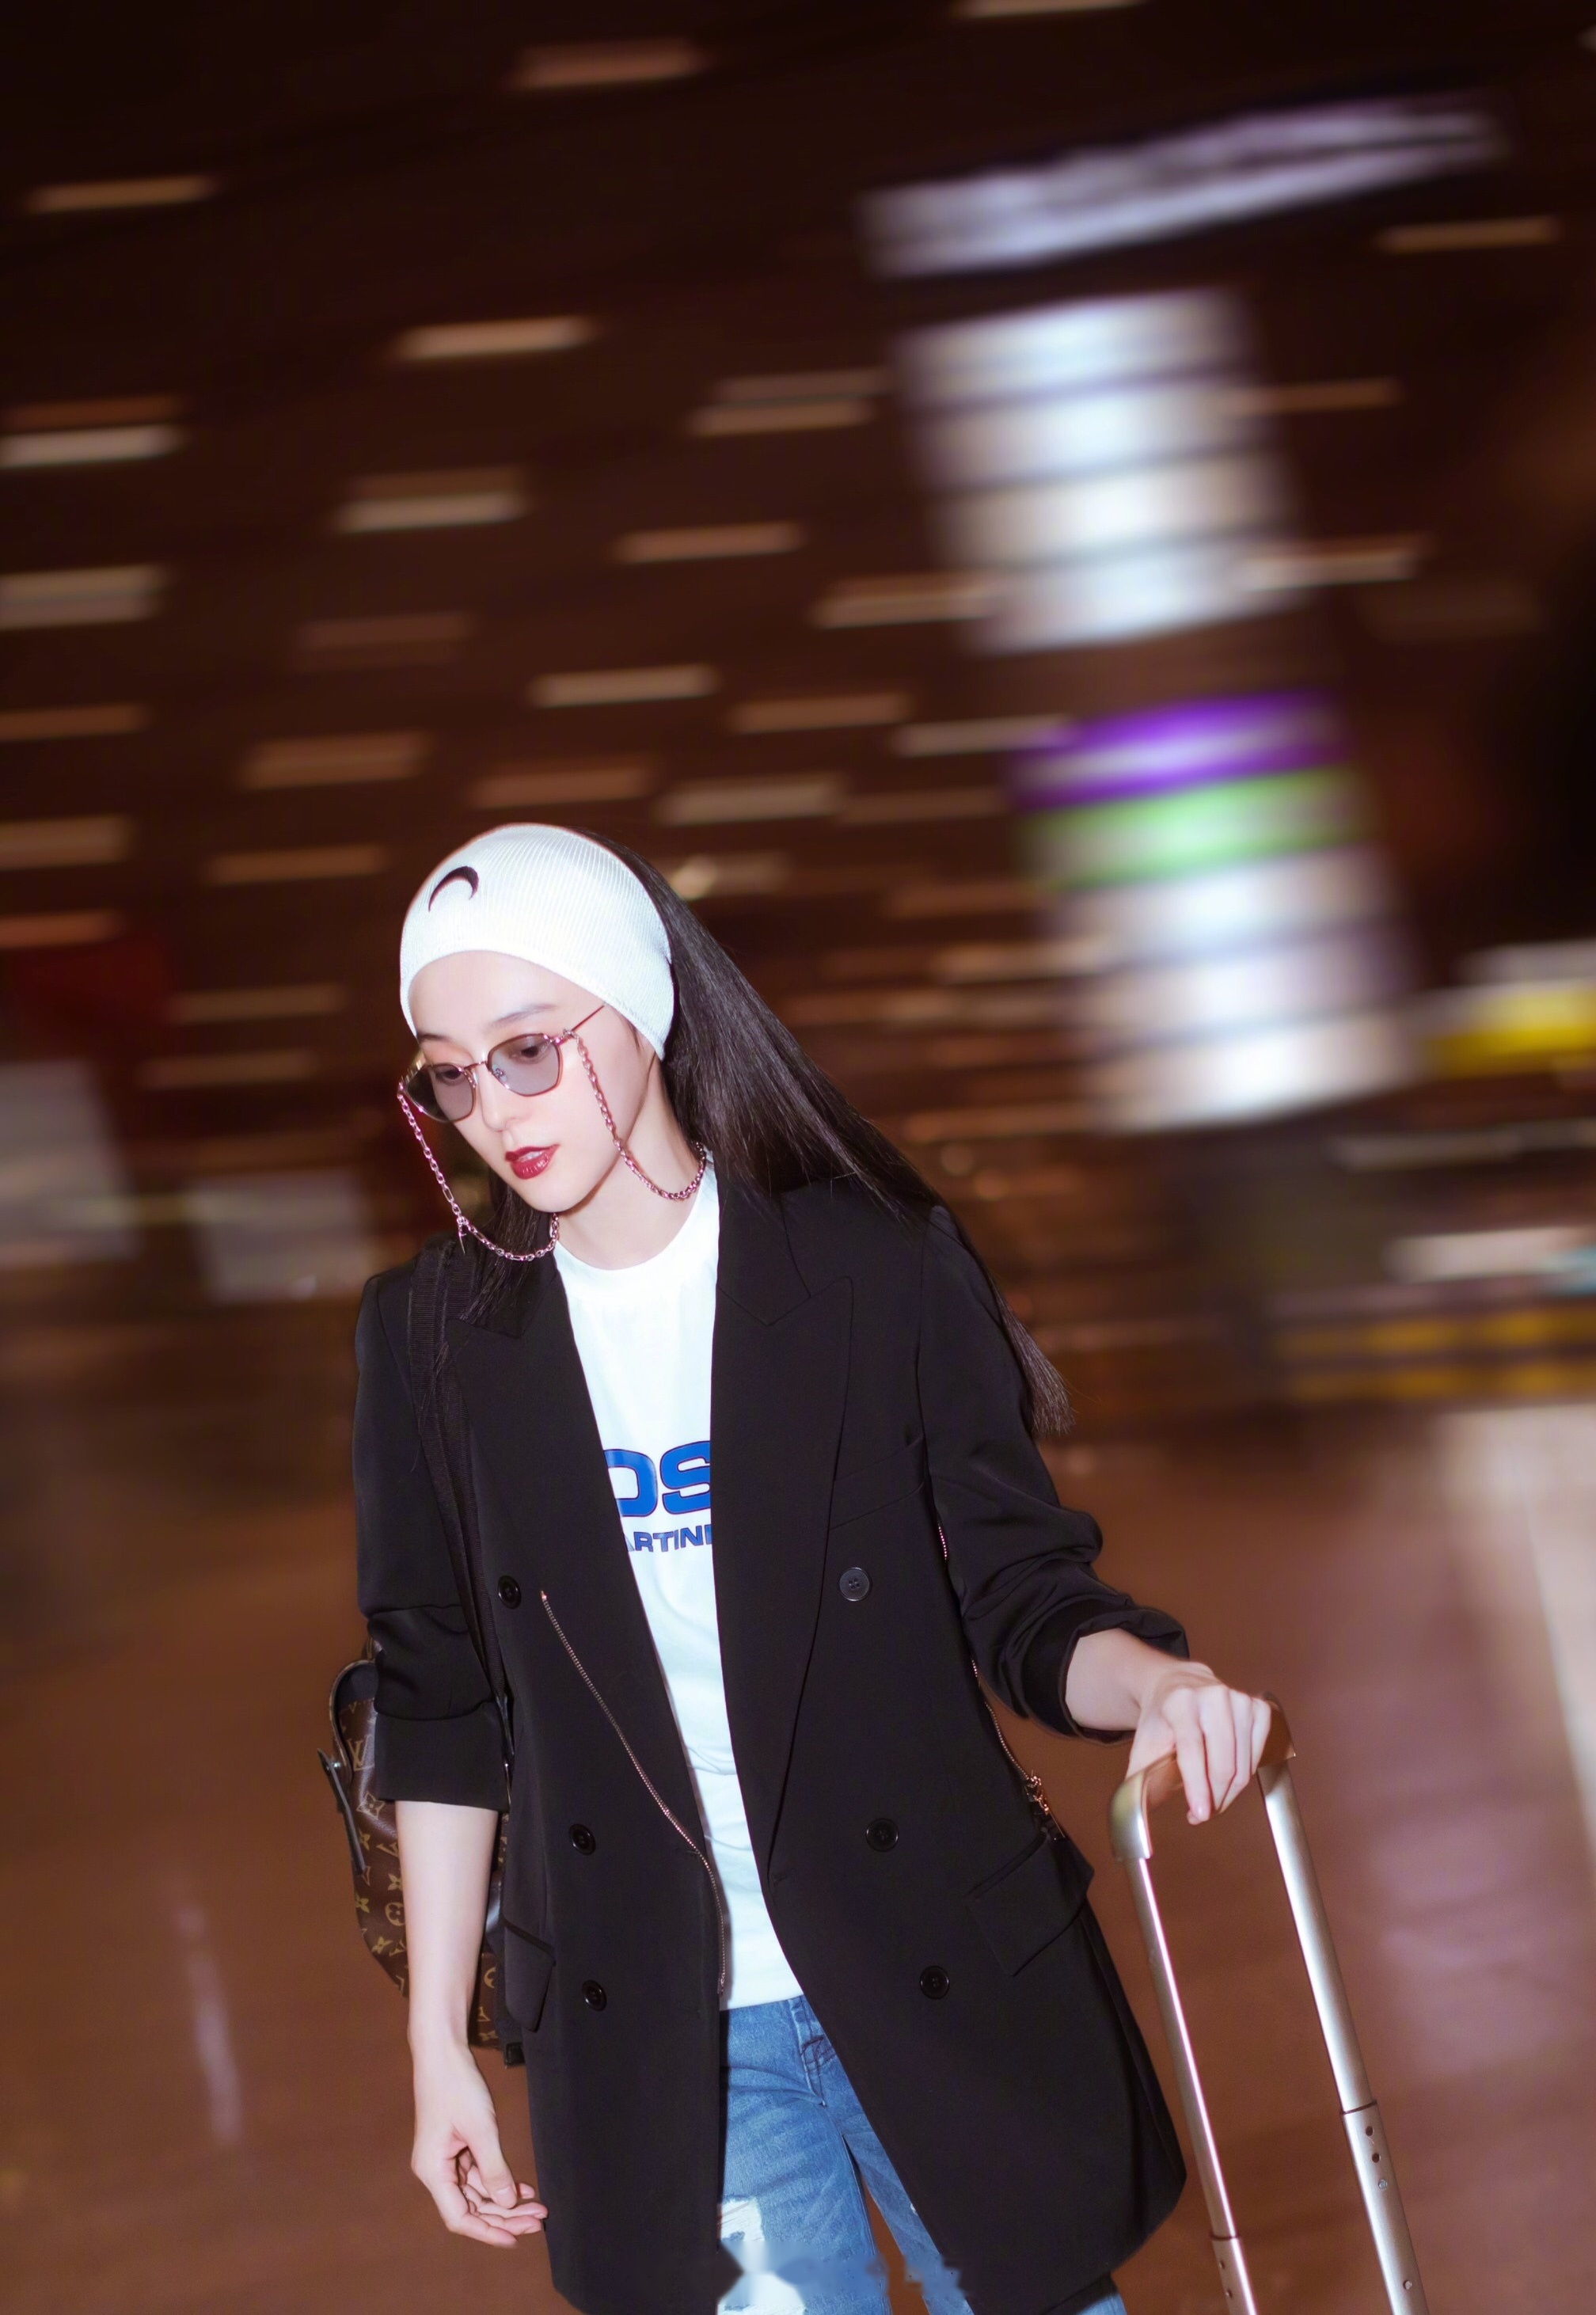 今日凌晨两点,中国女艺人范冰冰 抵达法国尼斯机场,身着一袭黑衣搭配